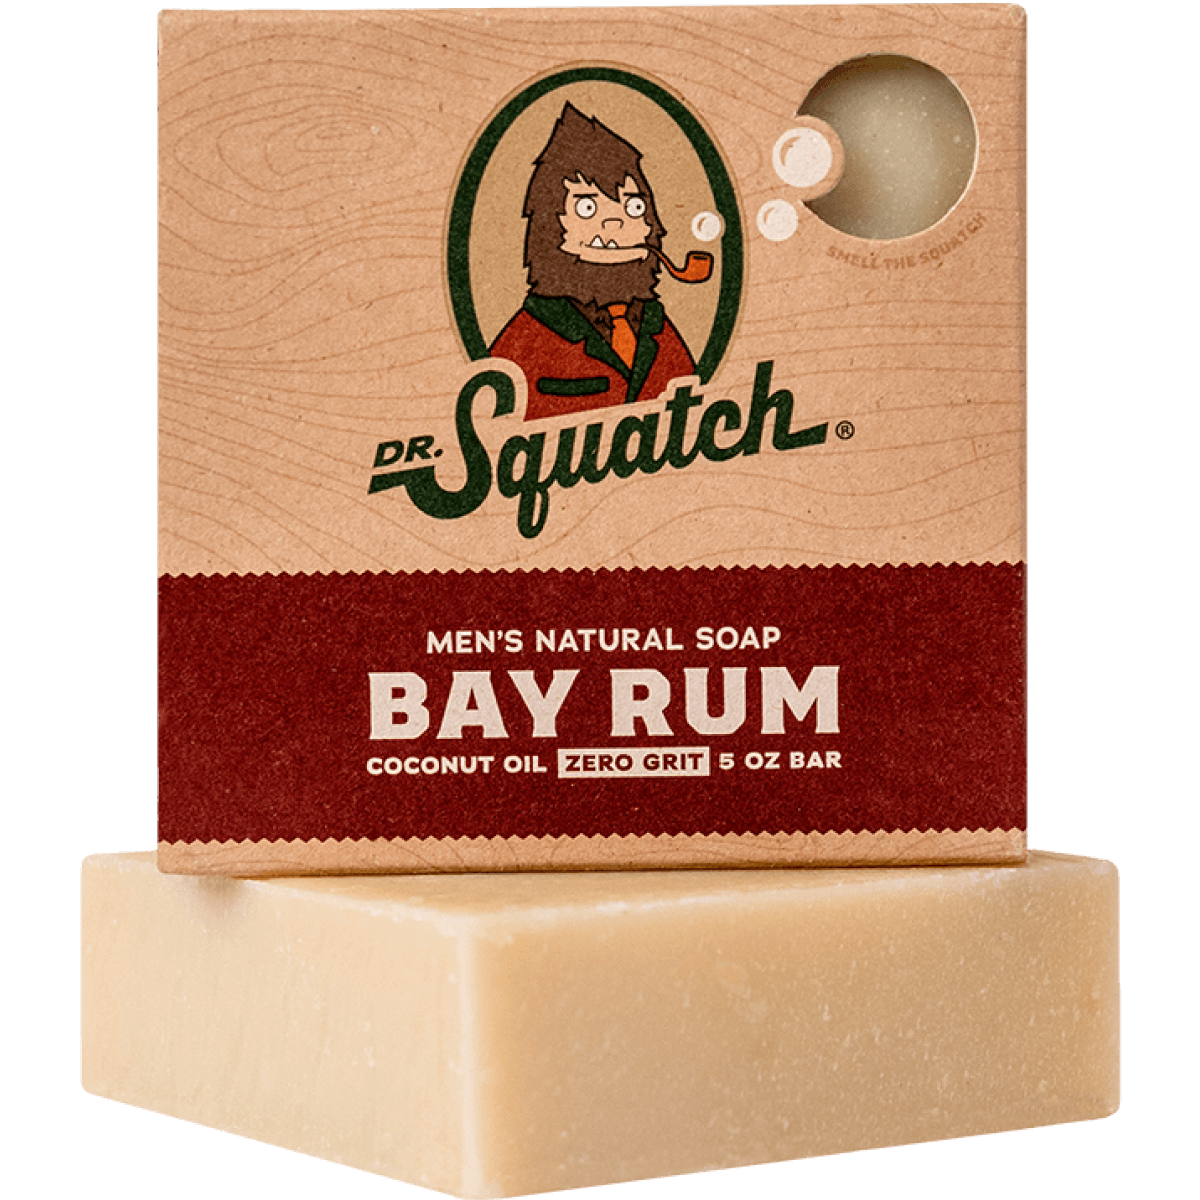 Bay Rum Men's Natural Soap